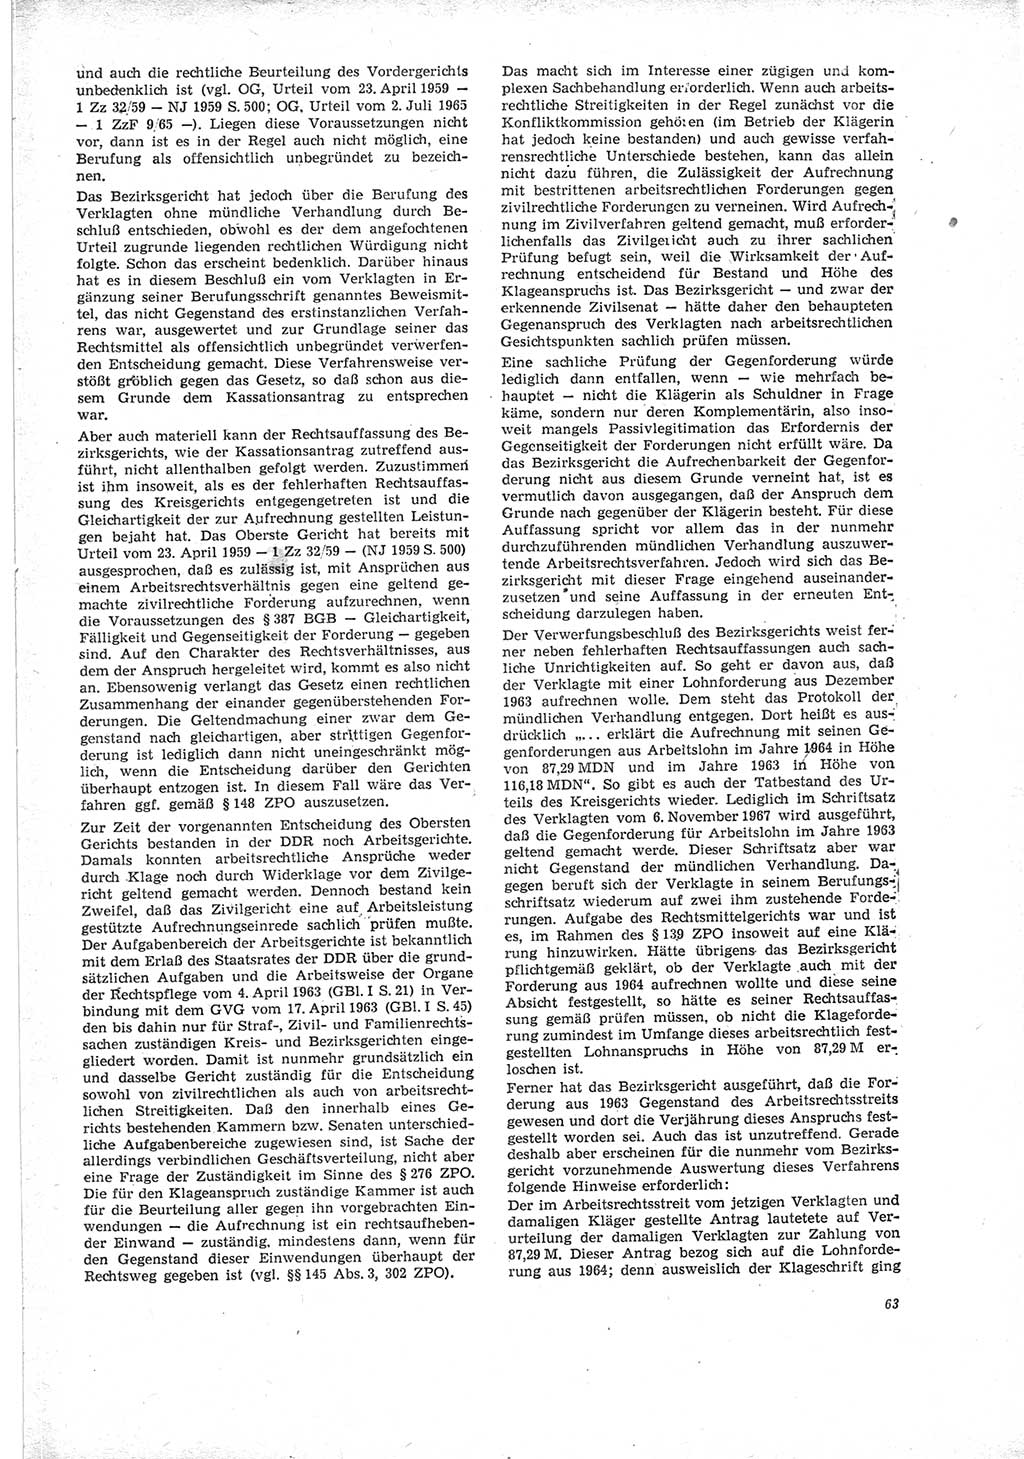 Neue Justiz (NJ), Zeitschrift für Recht und Rechtswissenschaft [Deutsche Demokratische Republik (DDR)], 23. Jahrgang 1969, Seite 63 (NJ DDR 1969, S. 63)